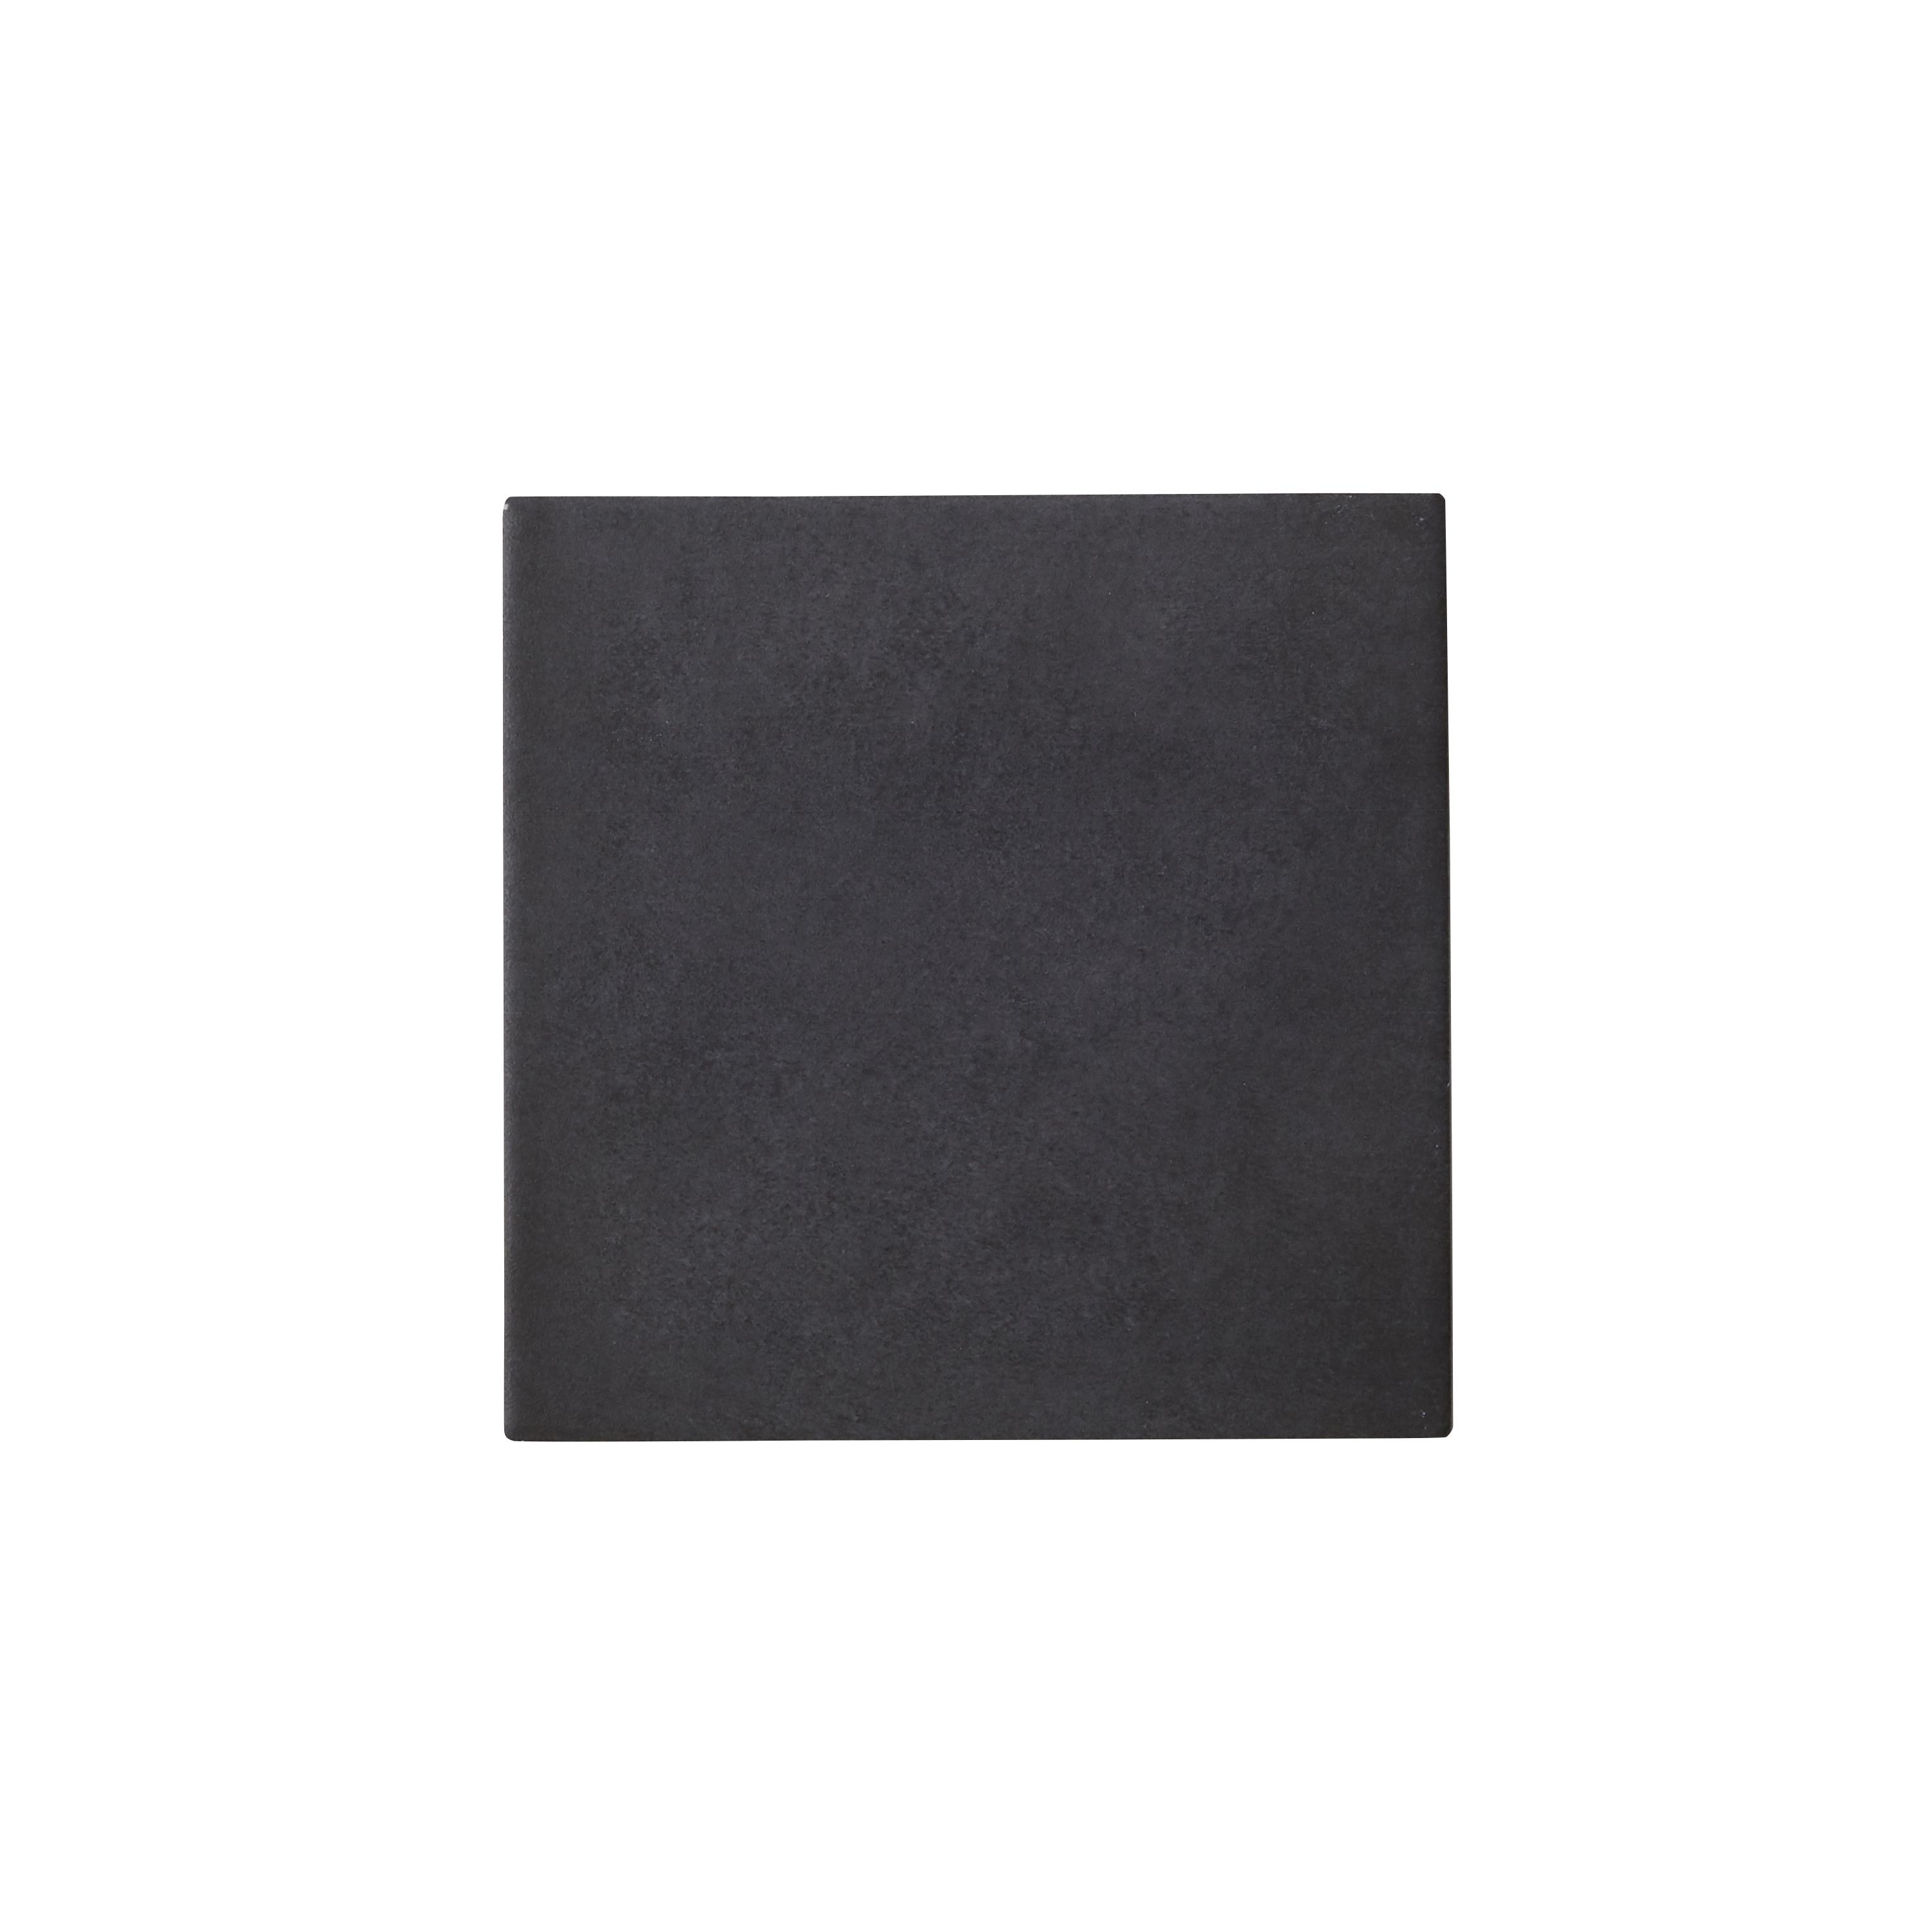 Colours Konkrete Black Matt Porcelain Wall & floor Tile Sample